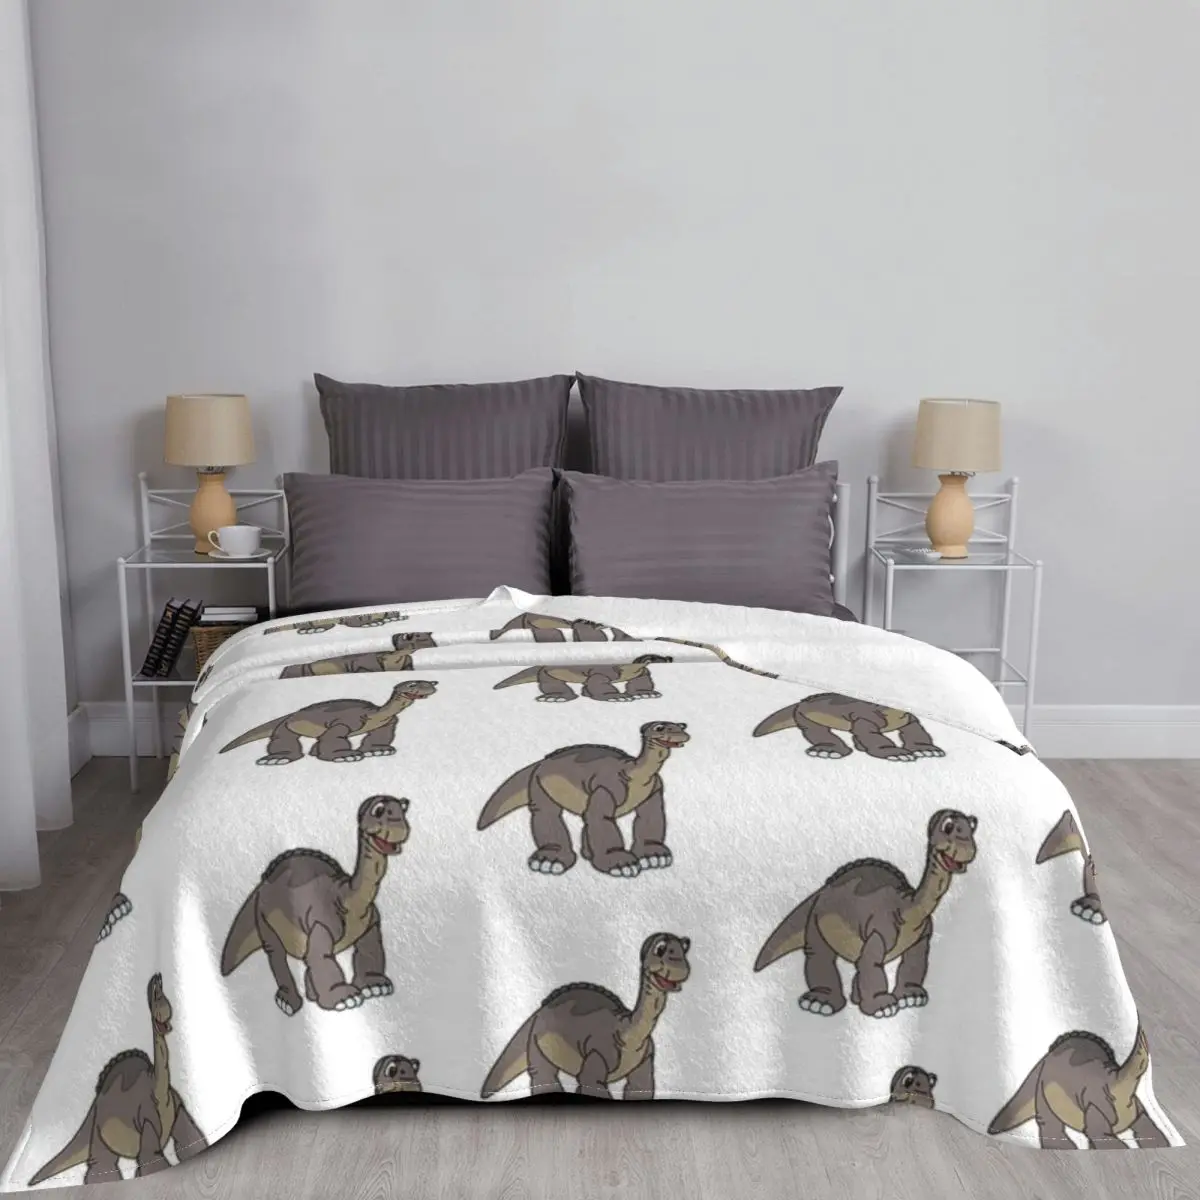 

Динозавр плед одеяло мягкий удобный диван фланелевое одеяло s и пледы одеяло s для взрослых детей постельное белье домашний декор одеяло